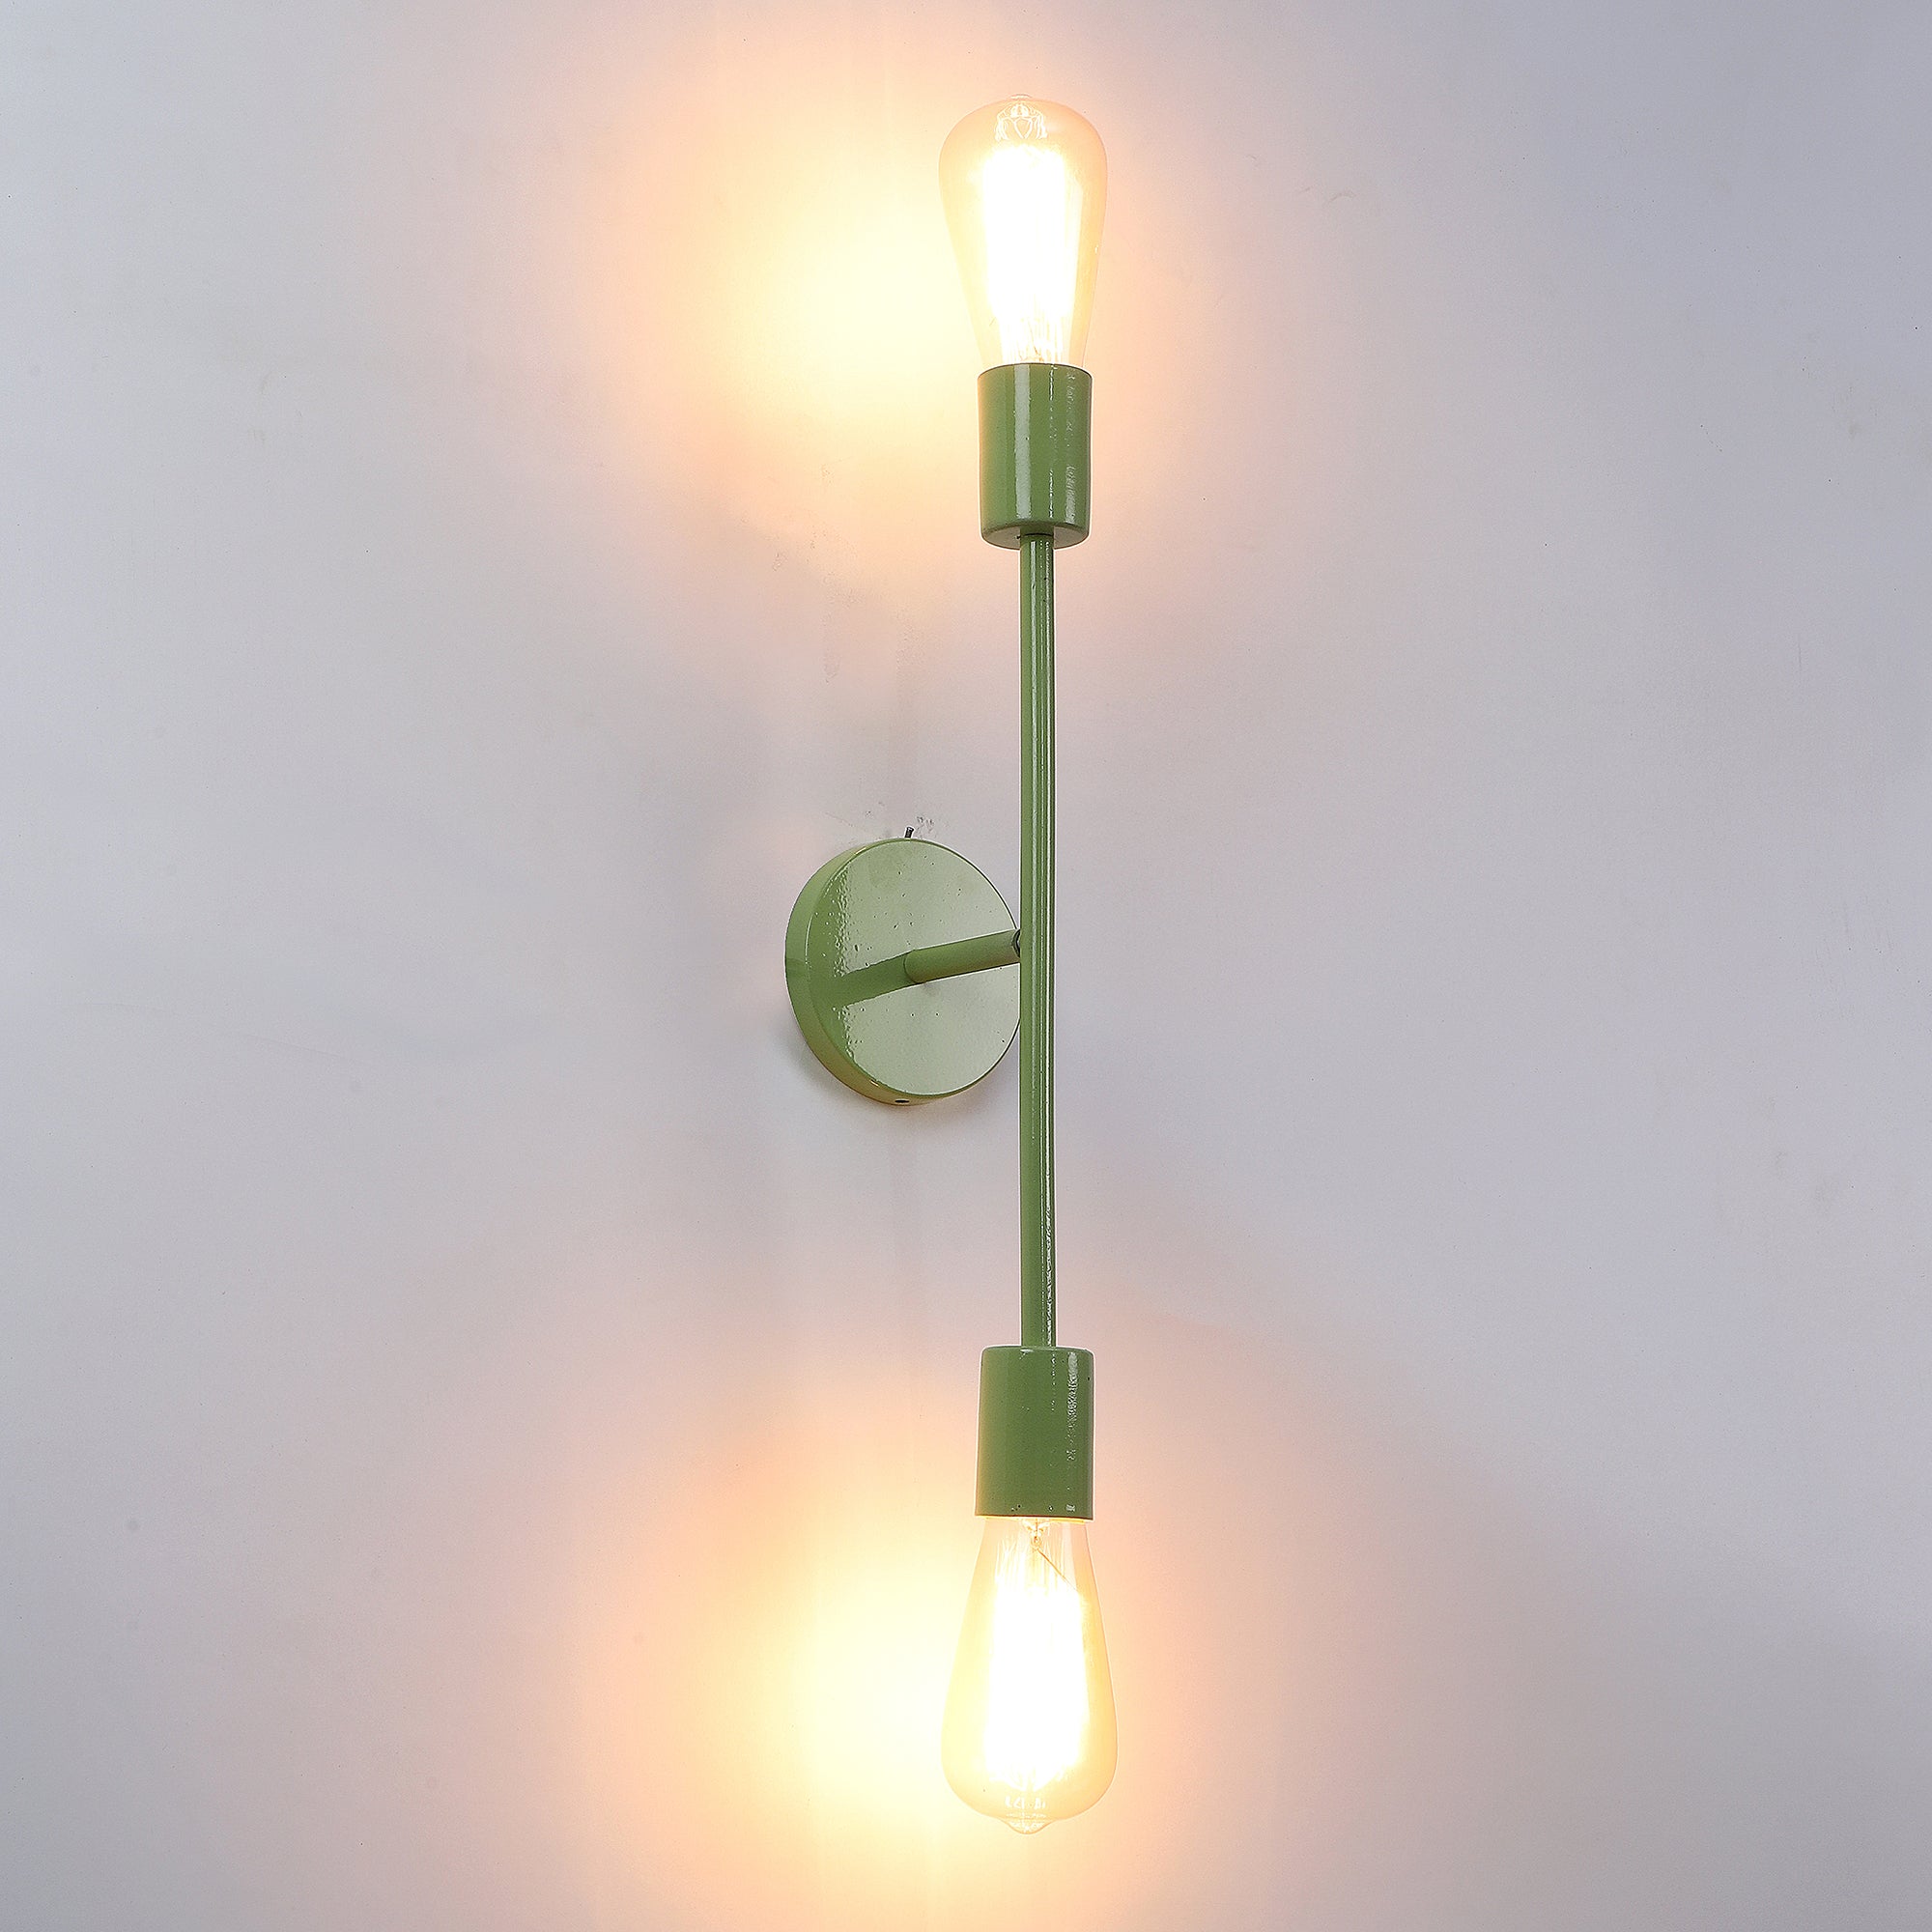 Filo Green Metal Wall Light by SS Lightings